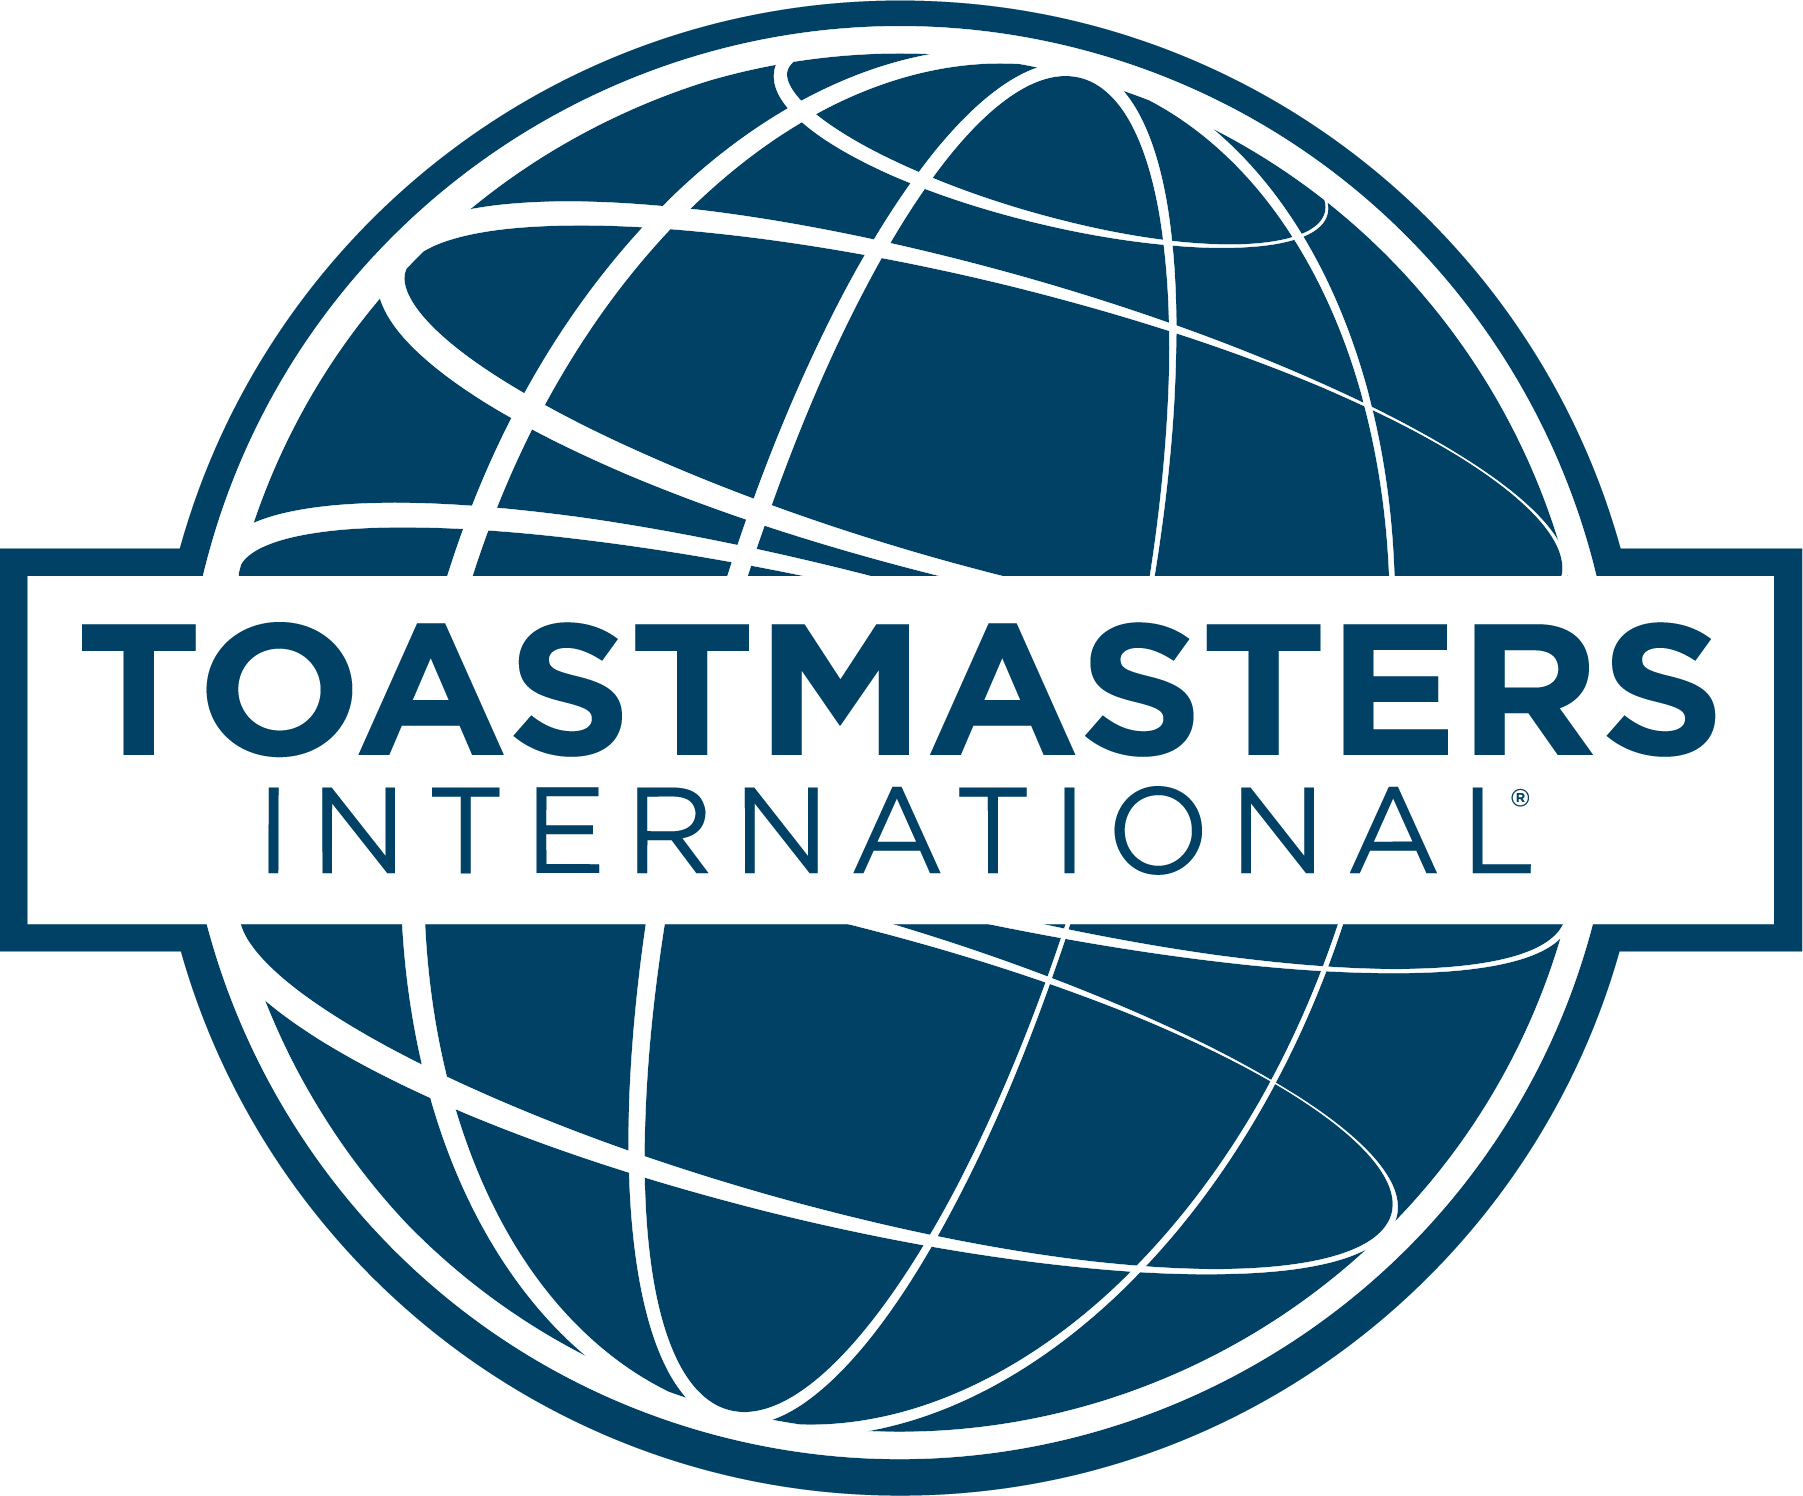 Toastmasters blue logo